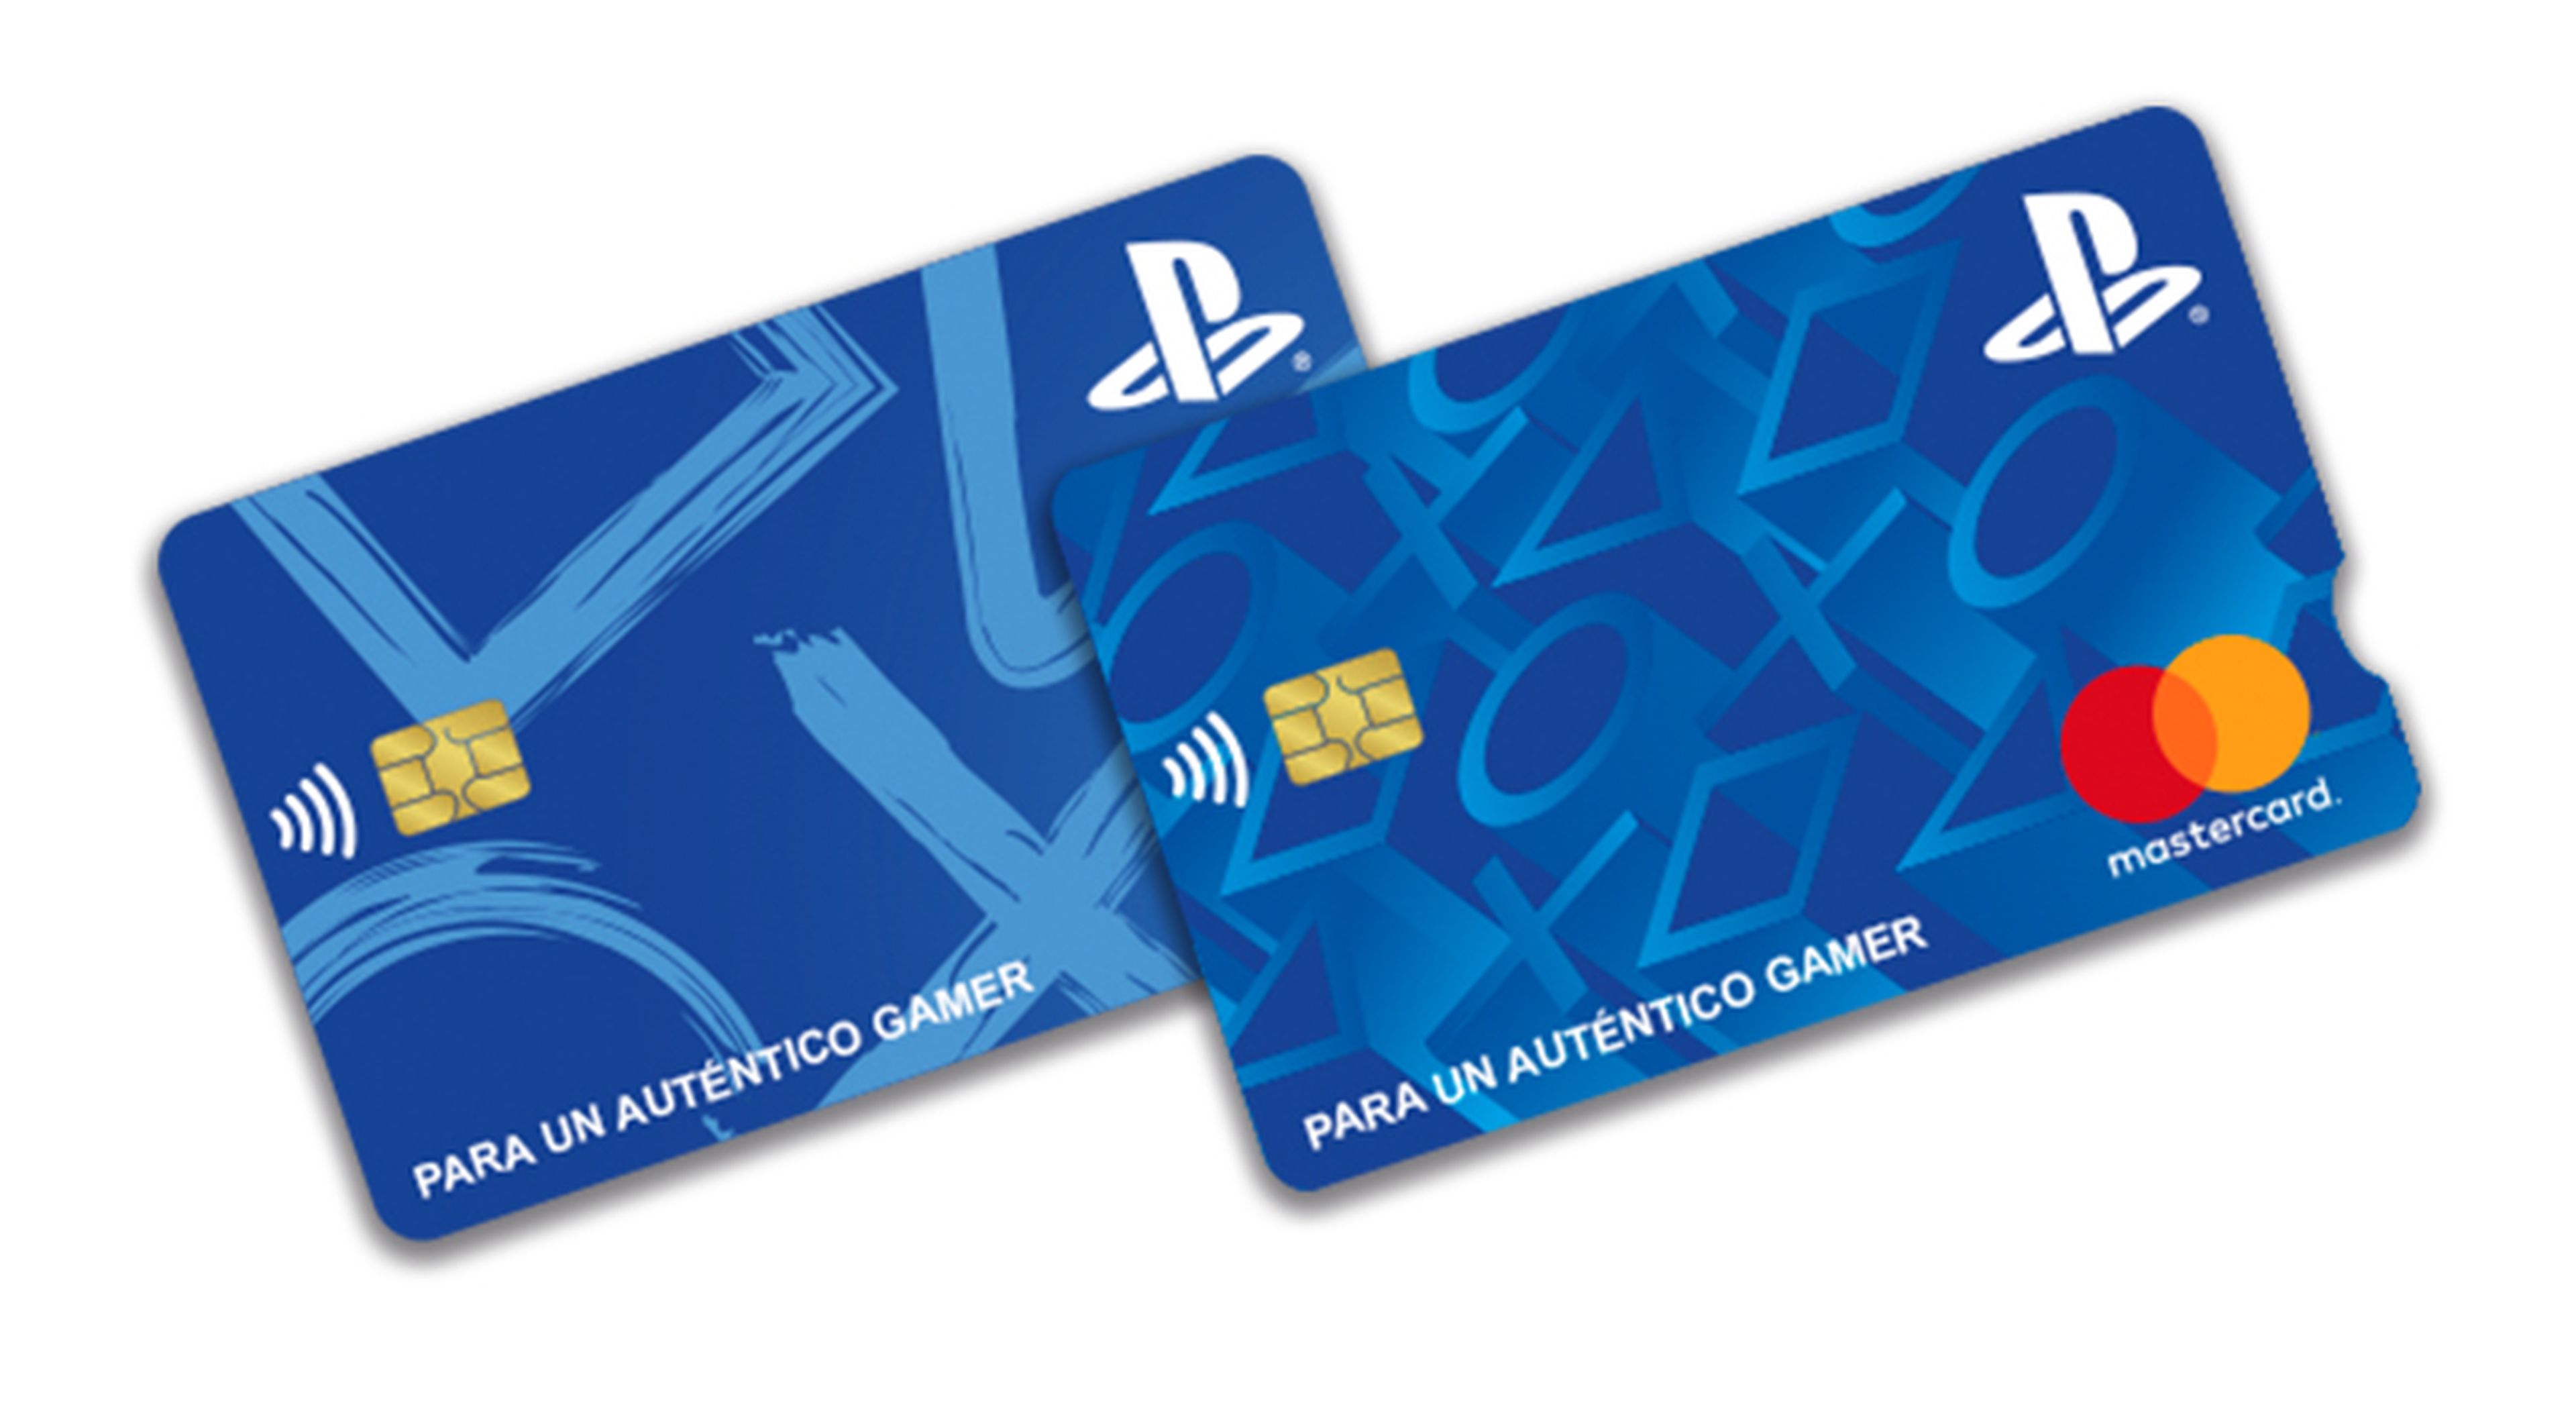 Qué ventajas tiene la tarjeta PlayStation frente a otras tarjetas de débito  para gamers?